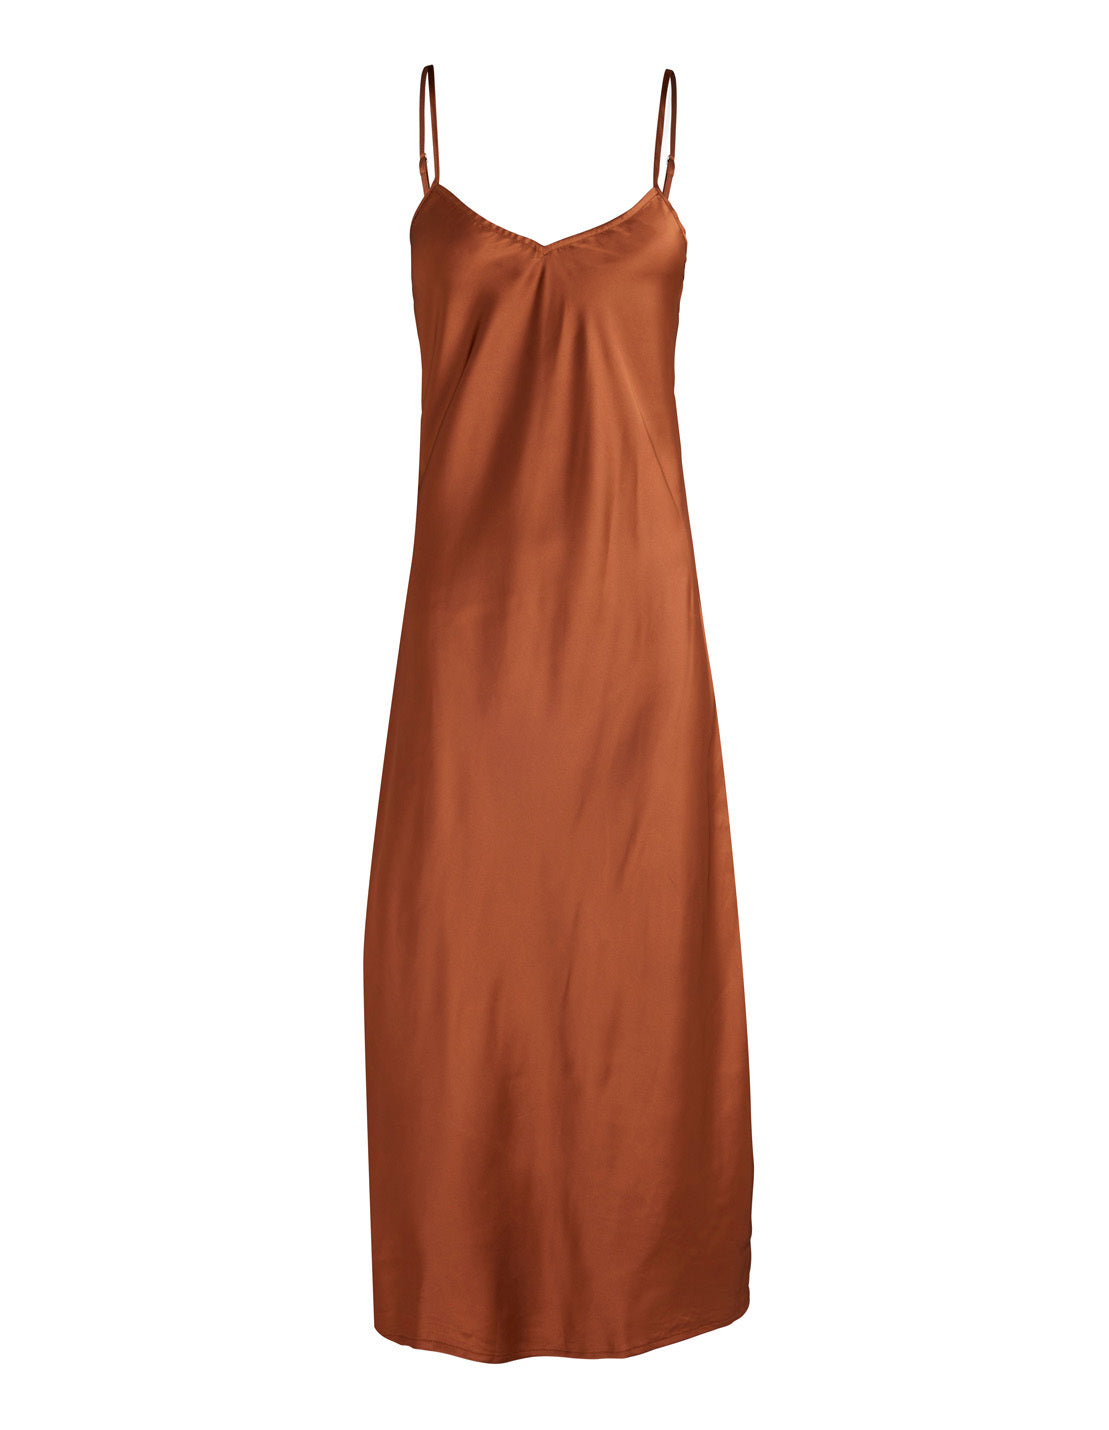 Gingerlilly Summer Satin Dress Chemise Brown